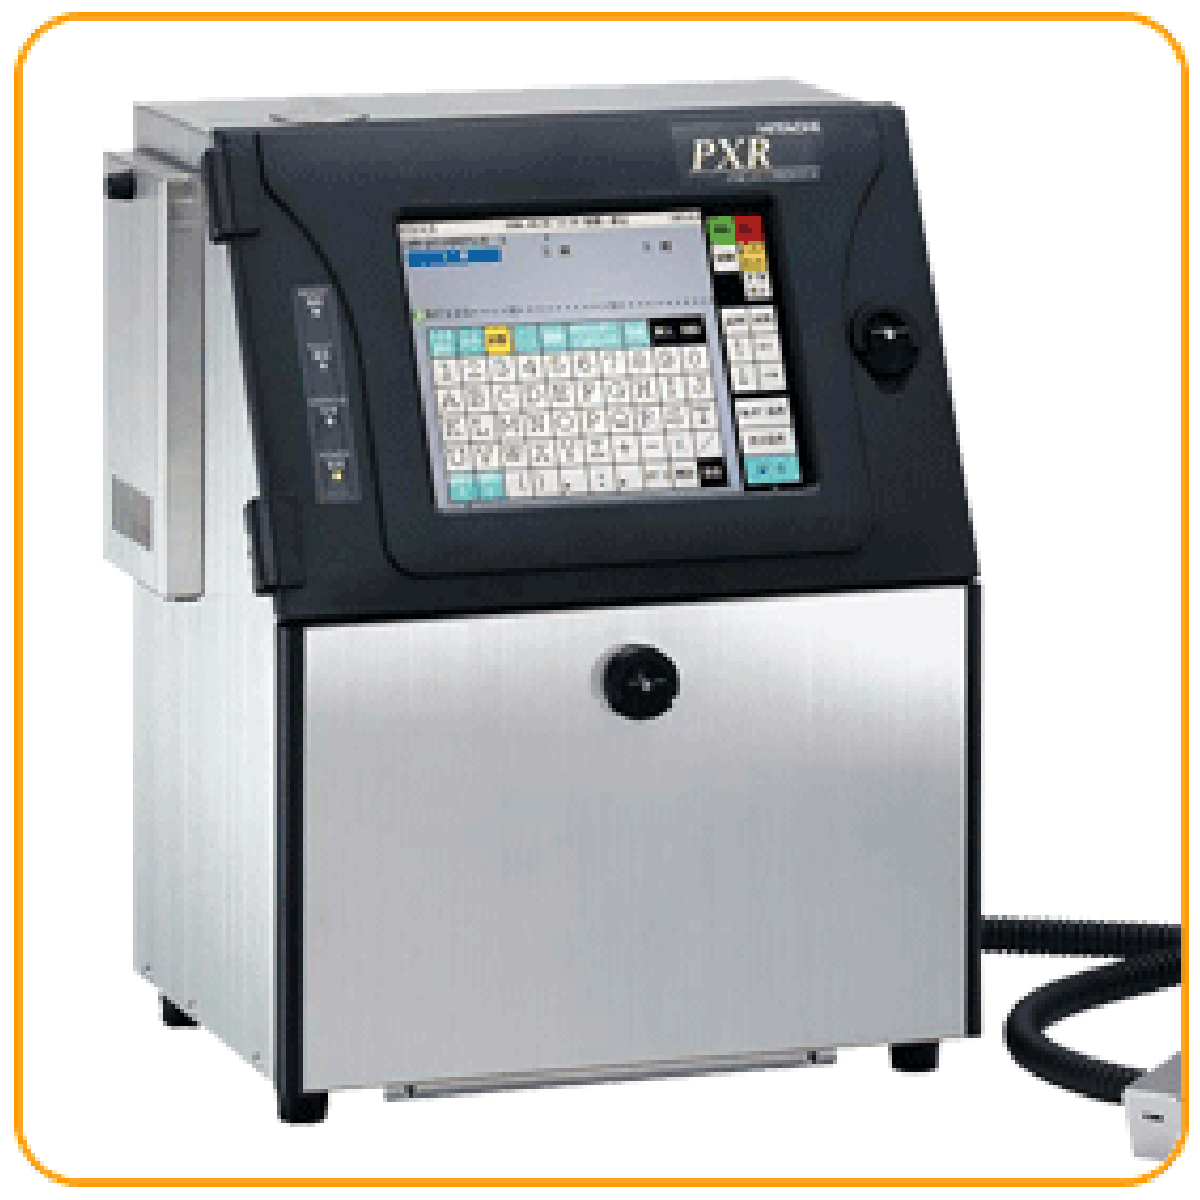 Hitachi PXR_D410W Inkjet Printer